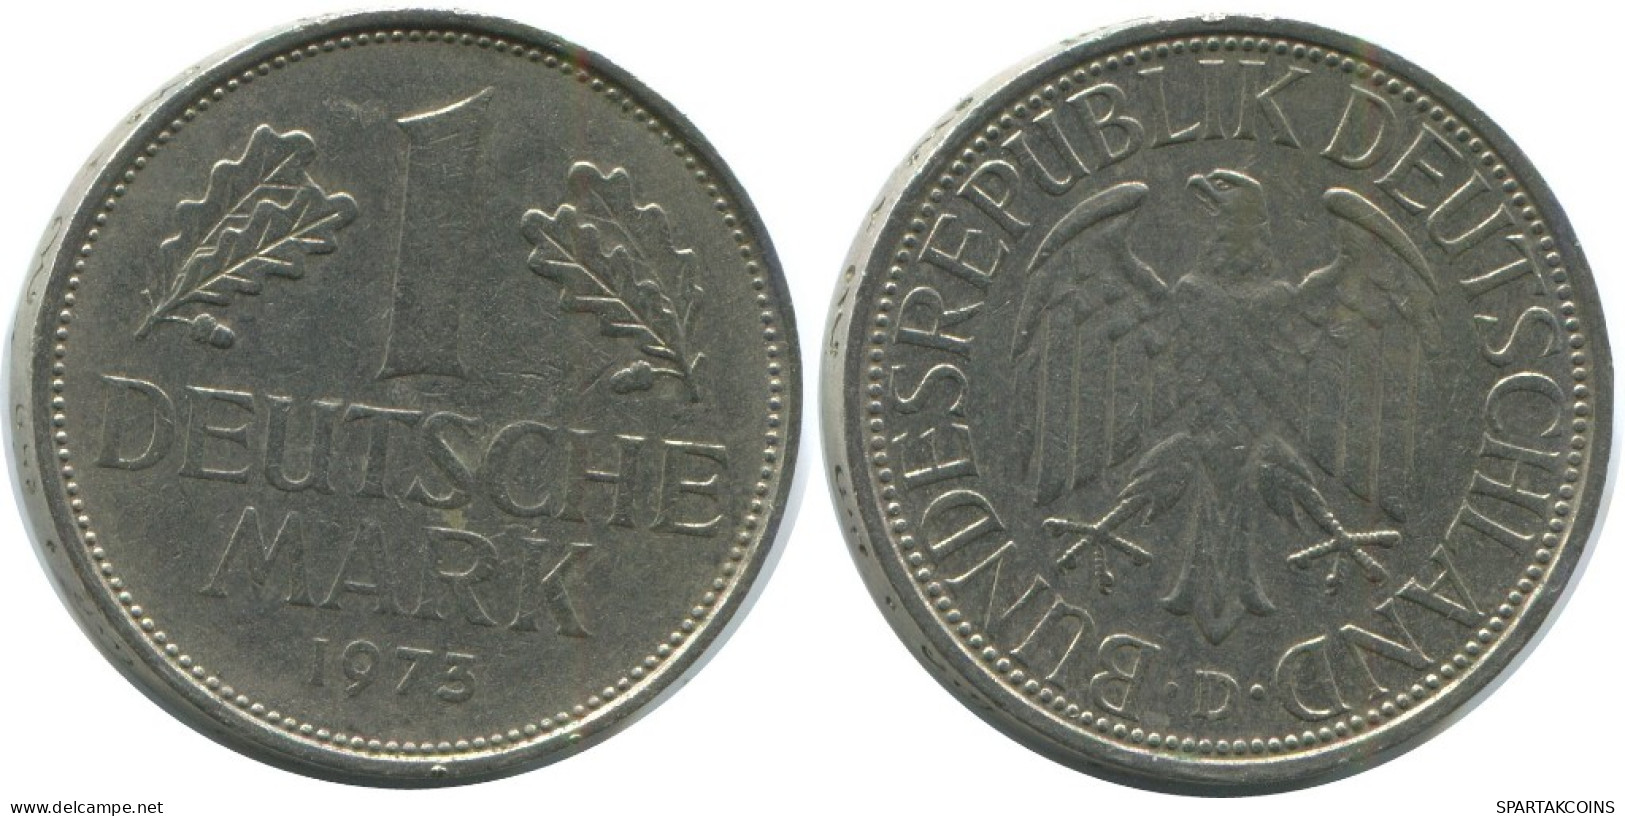 1 DM 1973 D BRD DEUTSCHLAND Münze GERMANY #AG305.3.D.A - 1 Mark